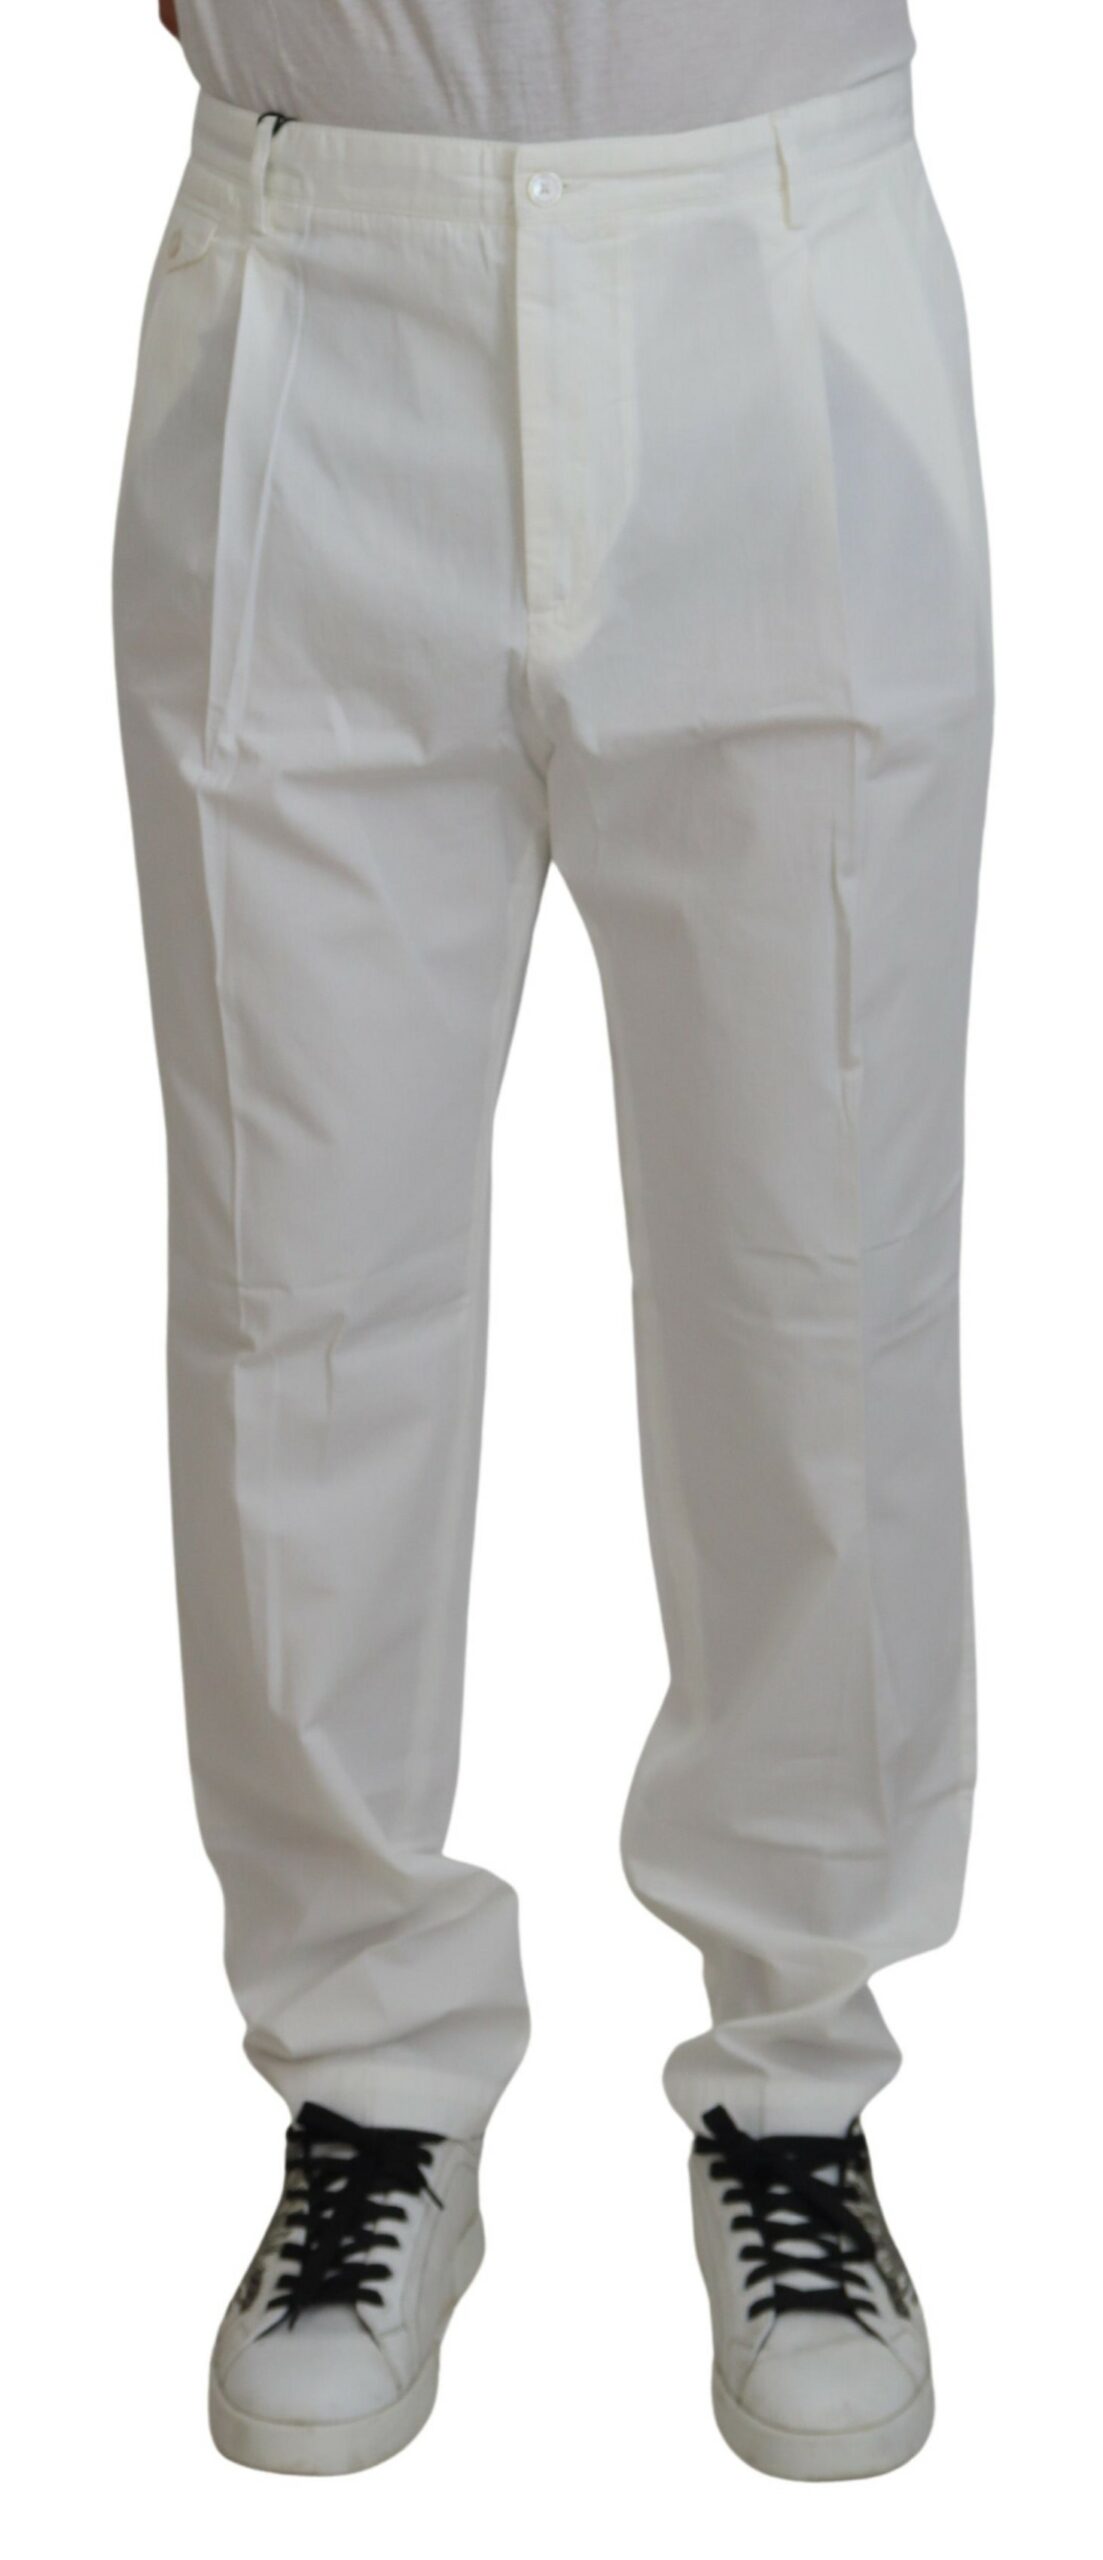 White Knit Lounge Pants Men - Trendy Knit Pants